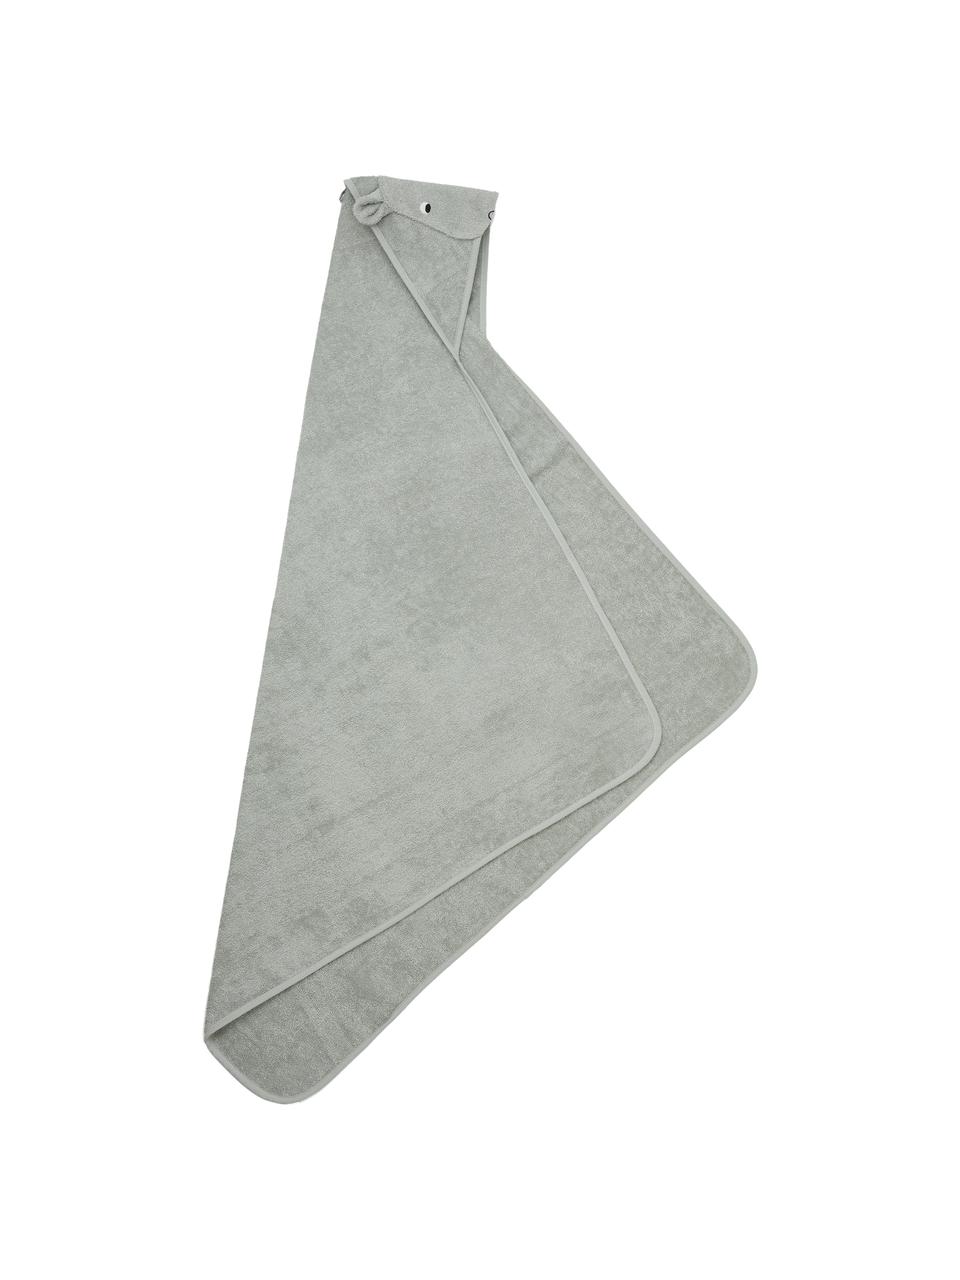 Asciugamano per bambini Augusta, 100% cotone, Grigio chiaro, motivo ippopotamo, Larg. 100 x Lung. 100 cm